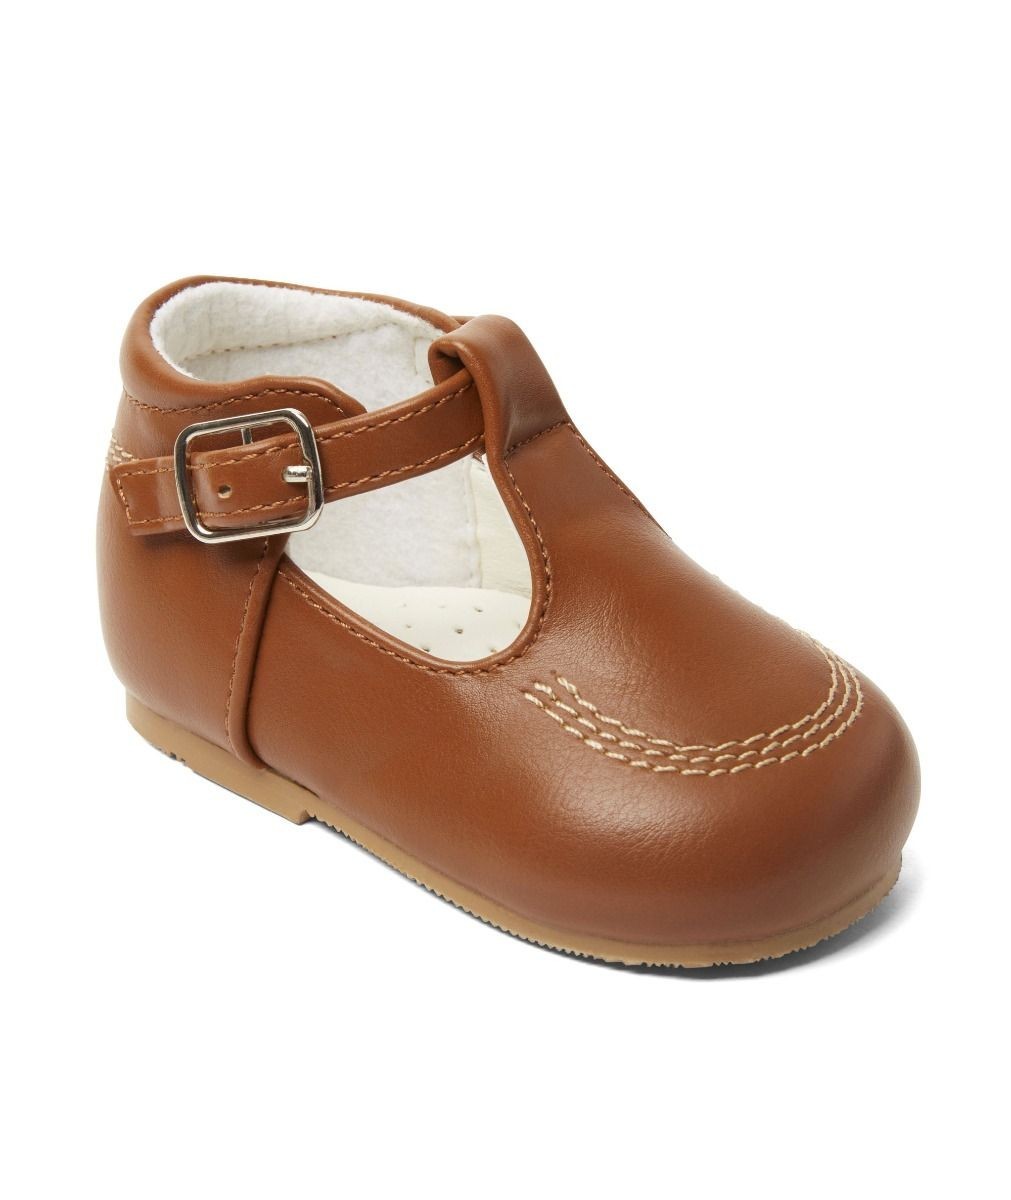 Baby- & Jungen-Schuhe mit Schnalle aus Leder – TEDDY - Braun braun